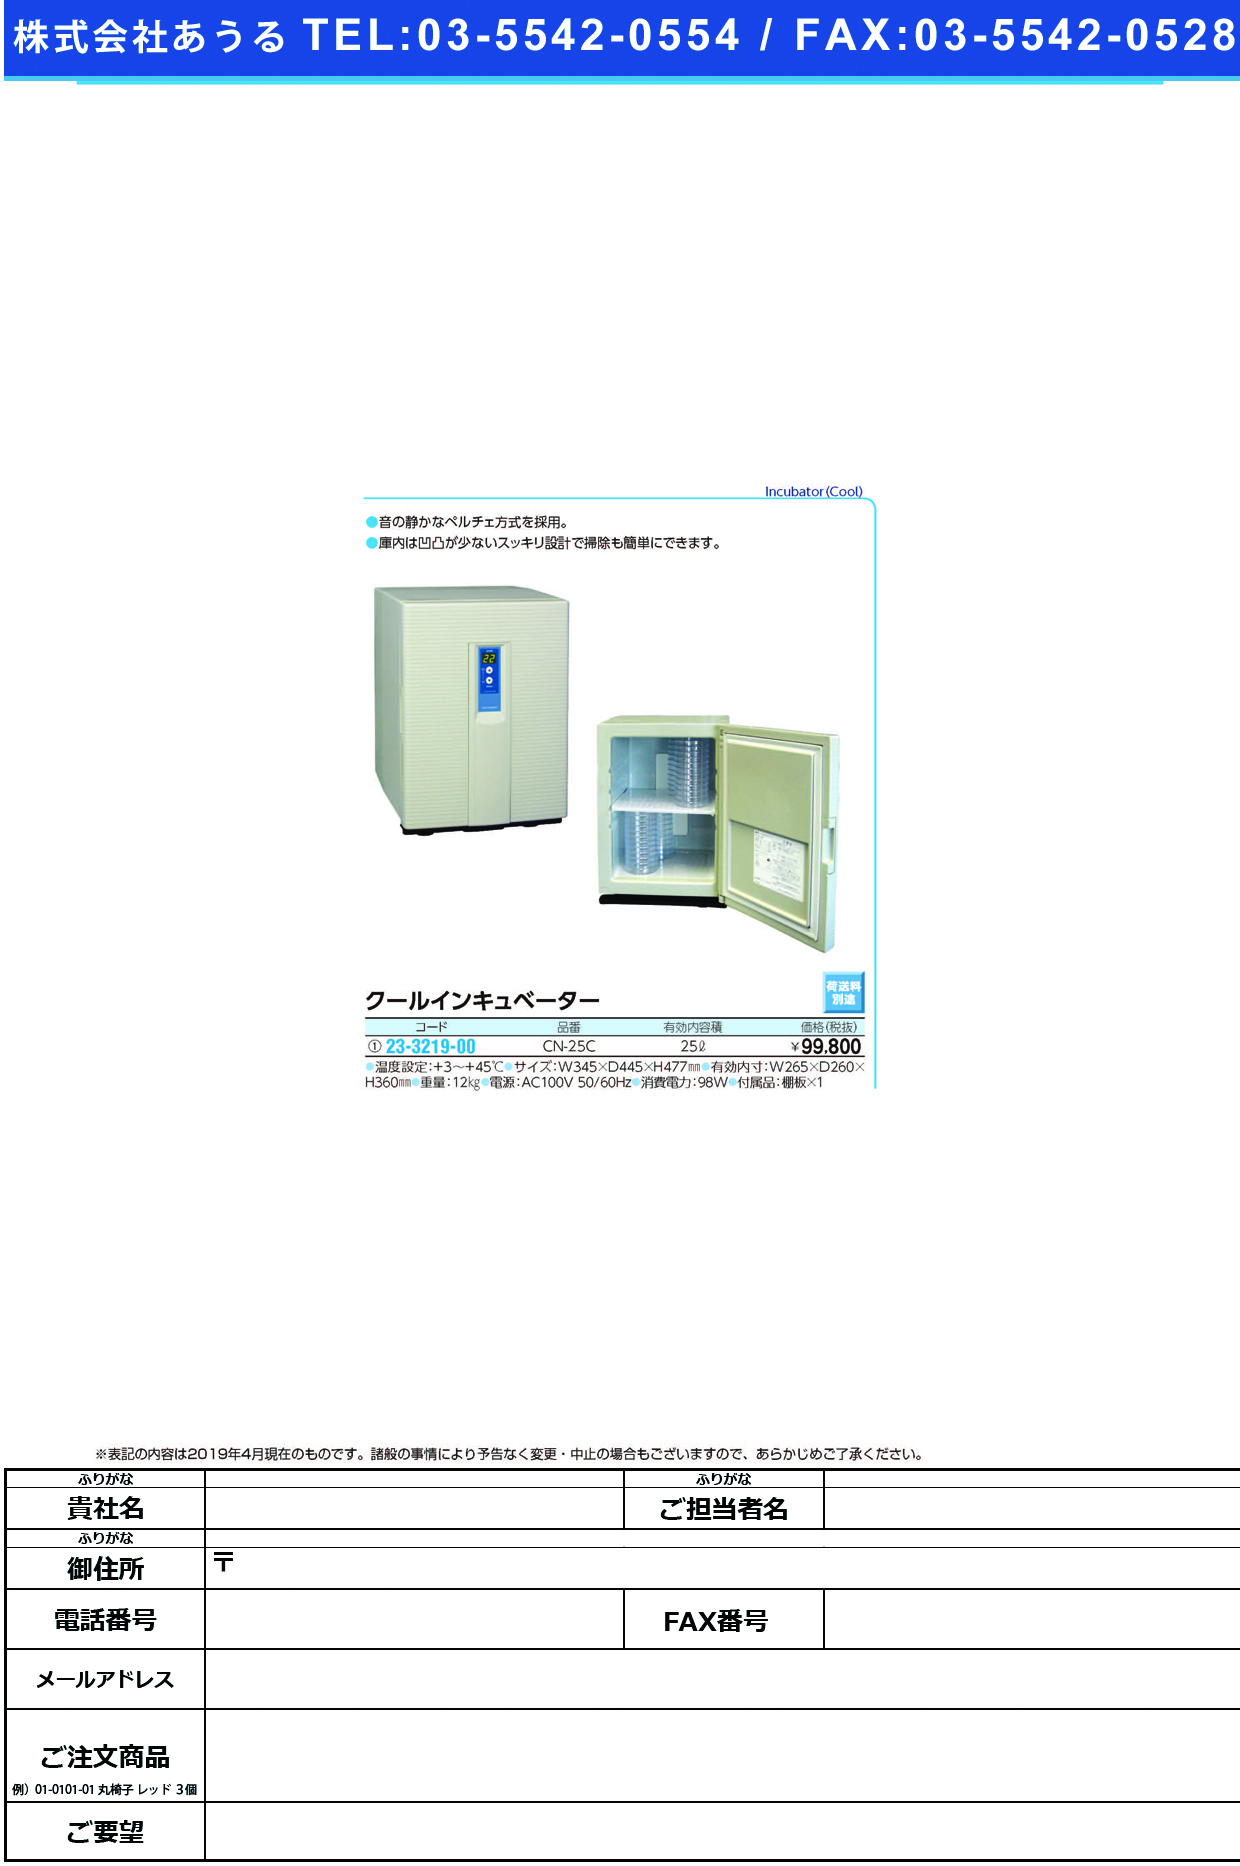 (23-3219-00)クールインキュベーター CN-25C(25L) ｸｰﾙｲﾝｷｭﾍﾞｰﾀｰ【1台単位】【2019年カタログ商品】